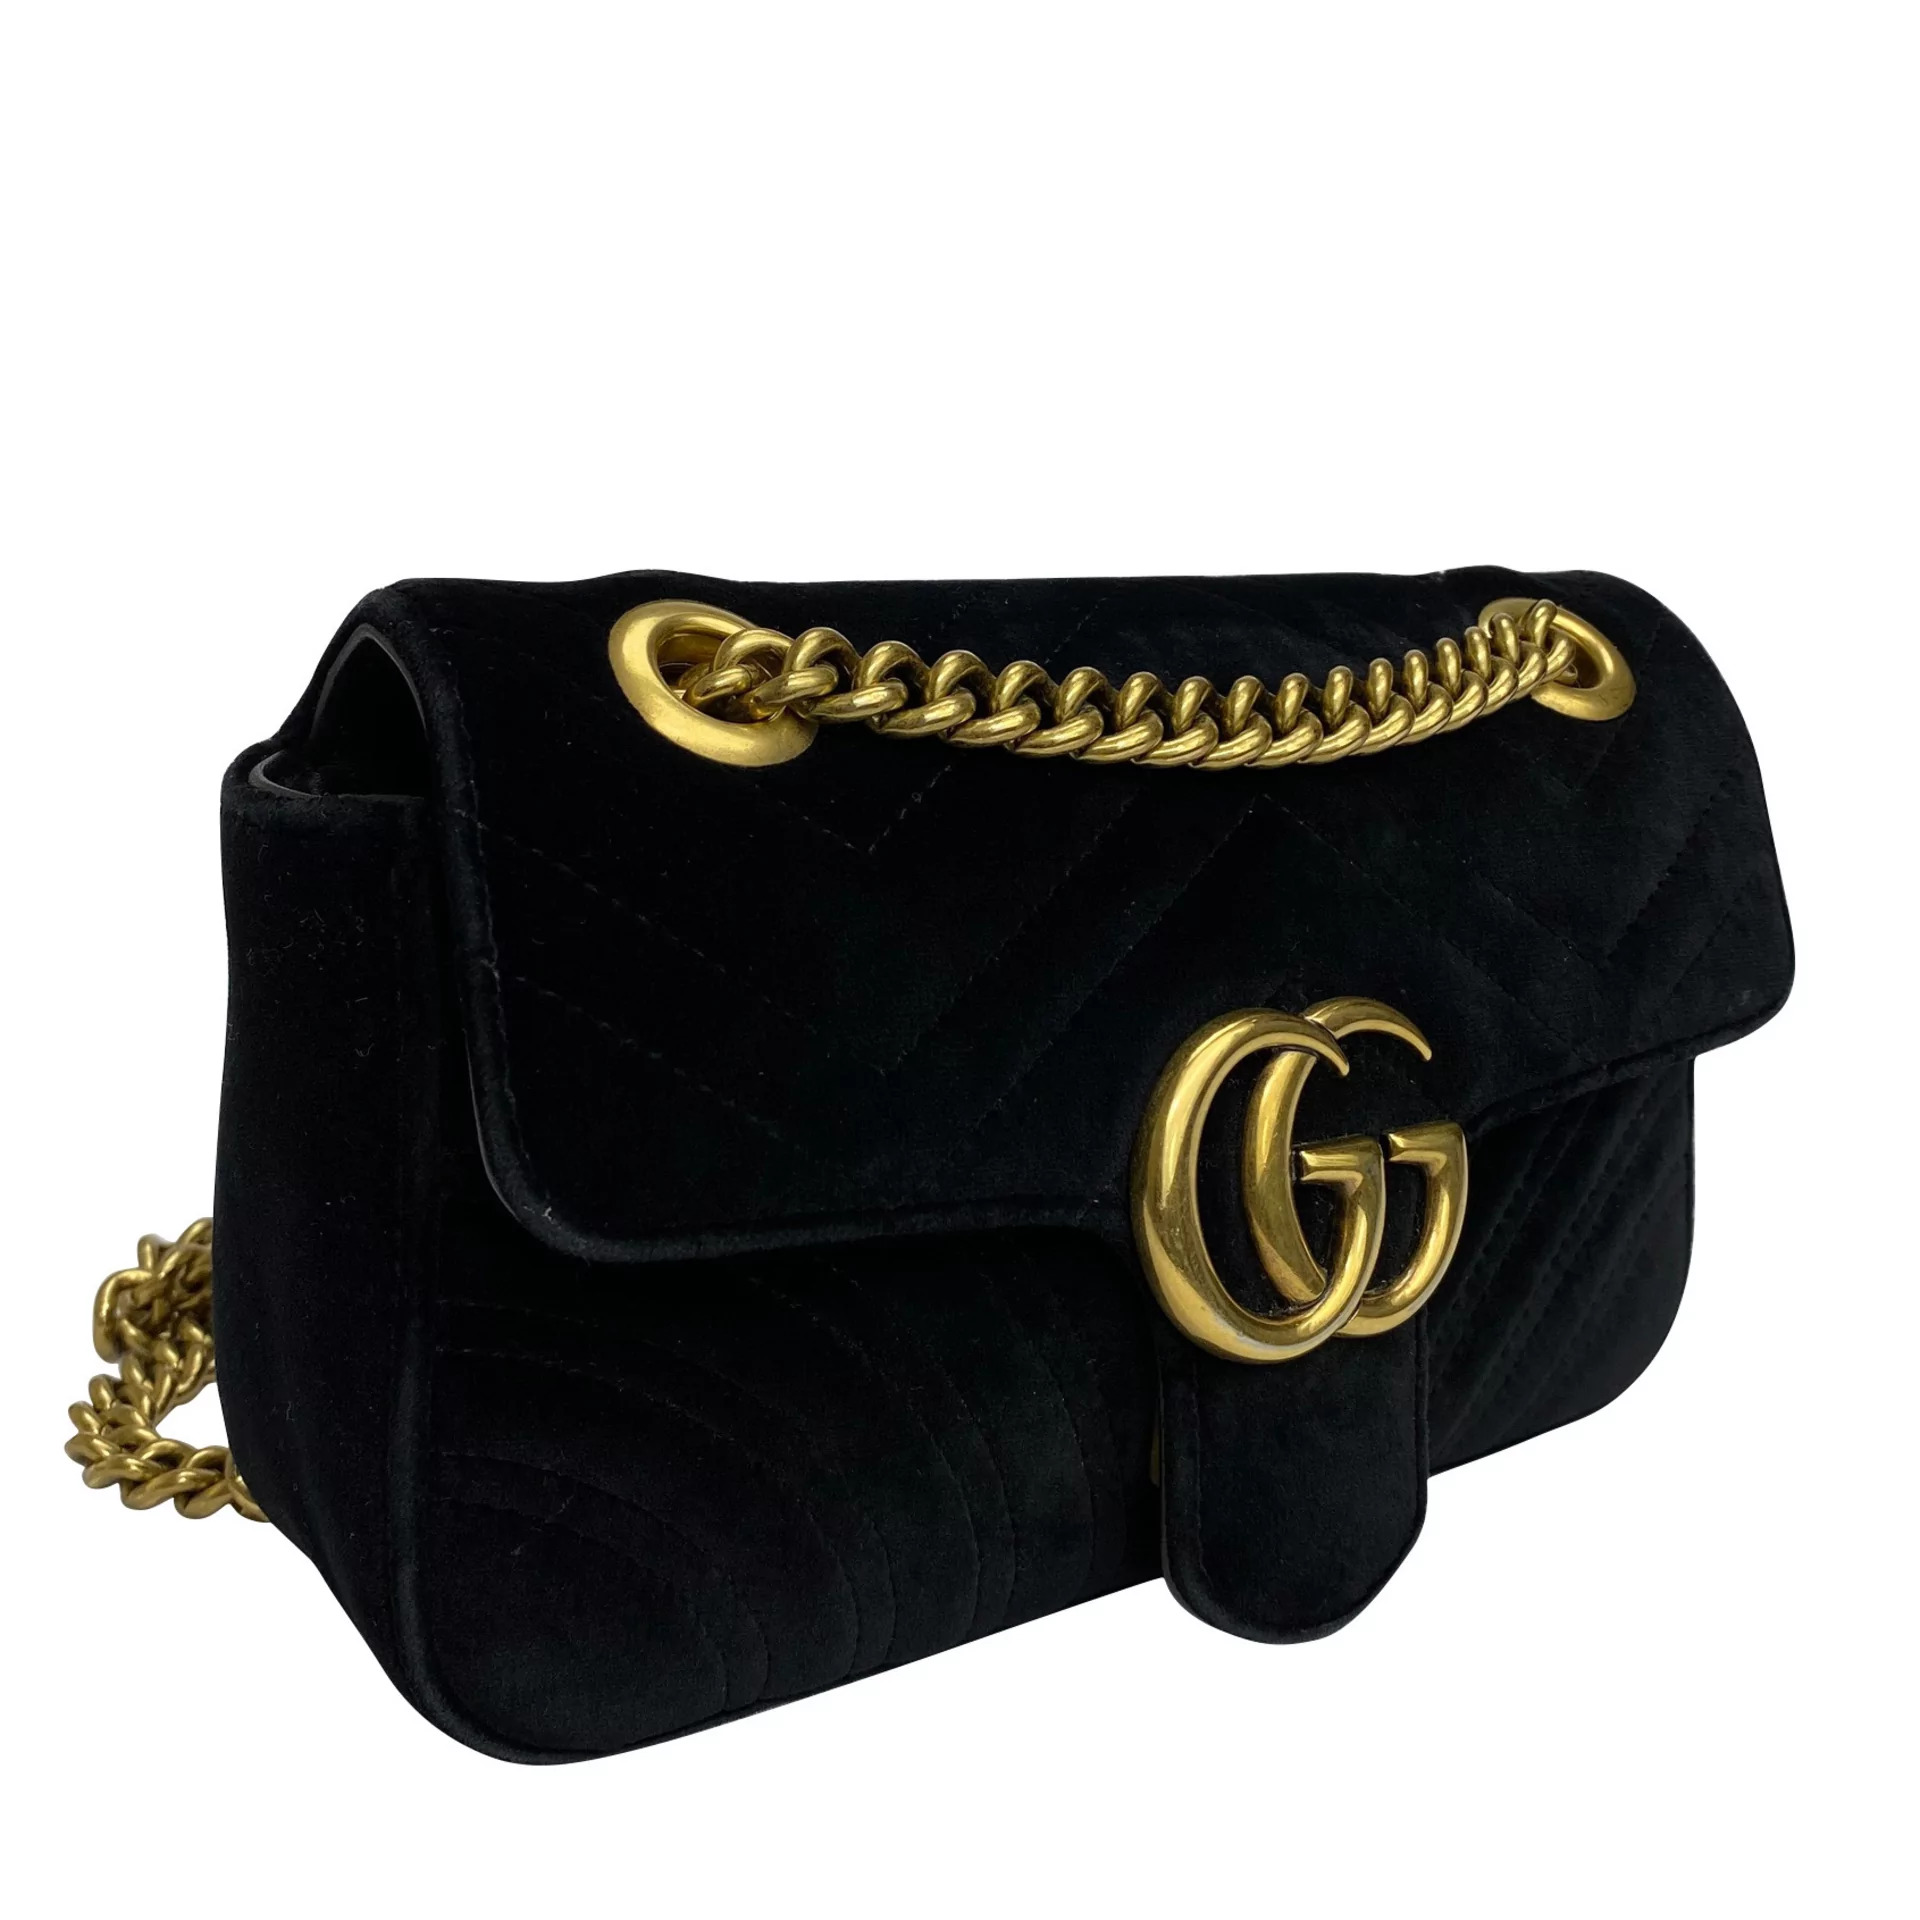 Bolsa Gucci GG Marmont Veludo